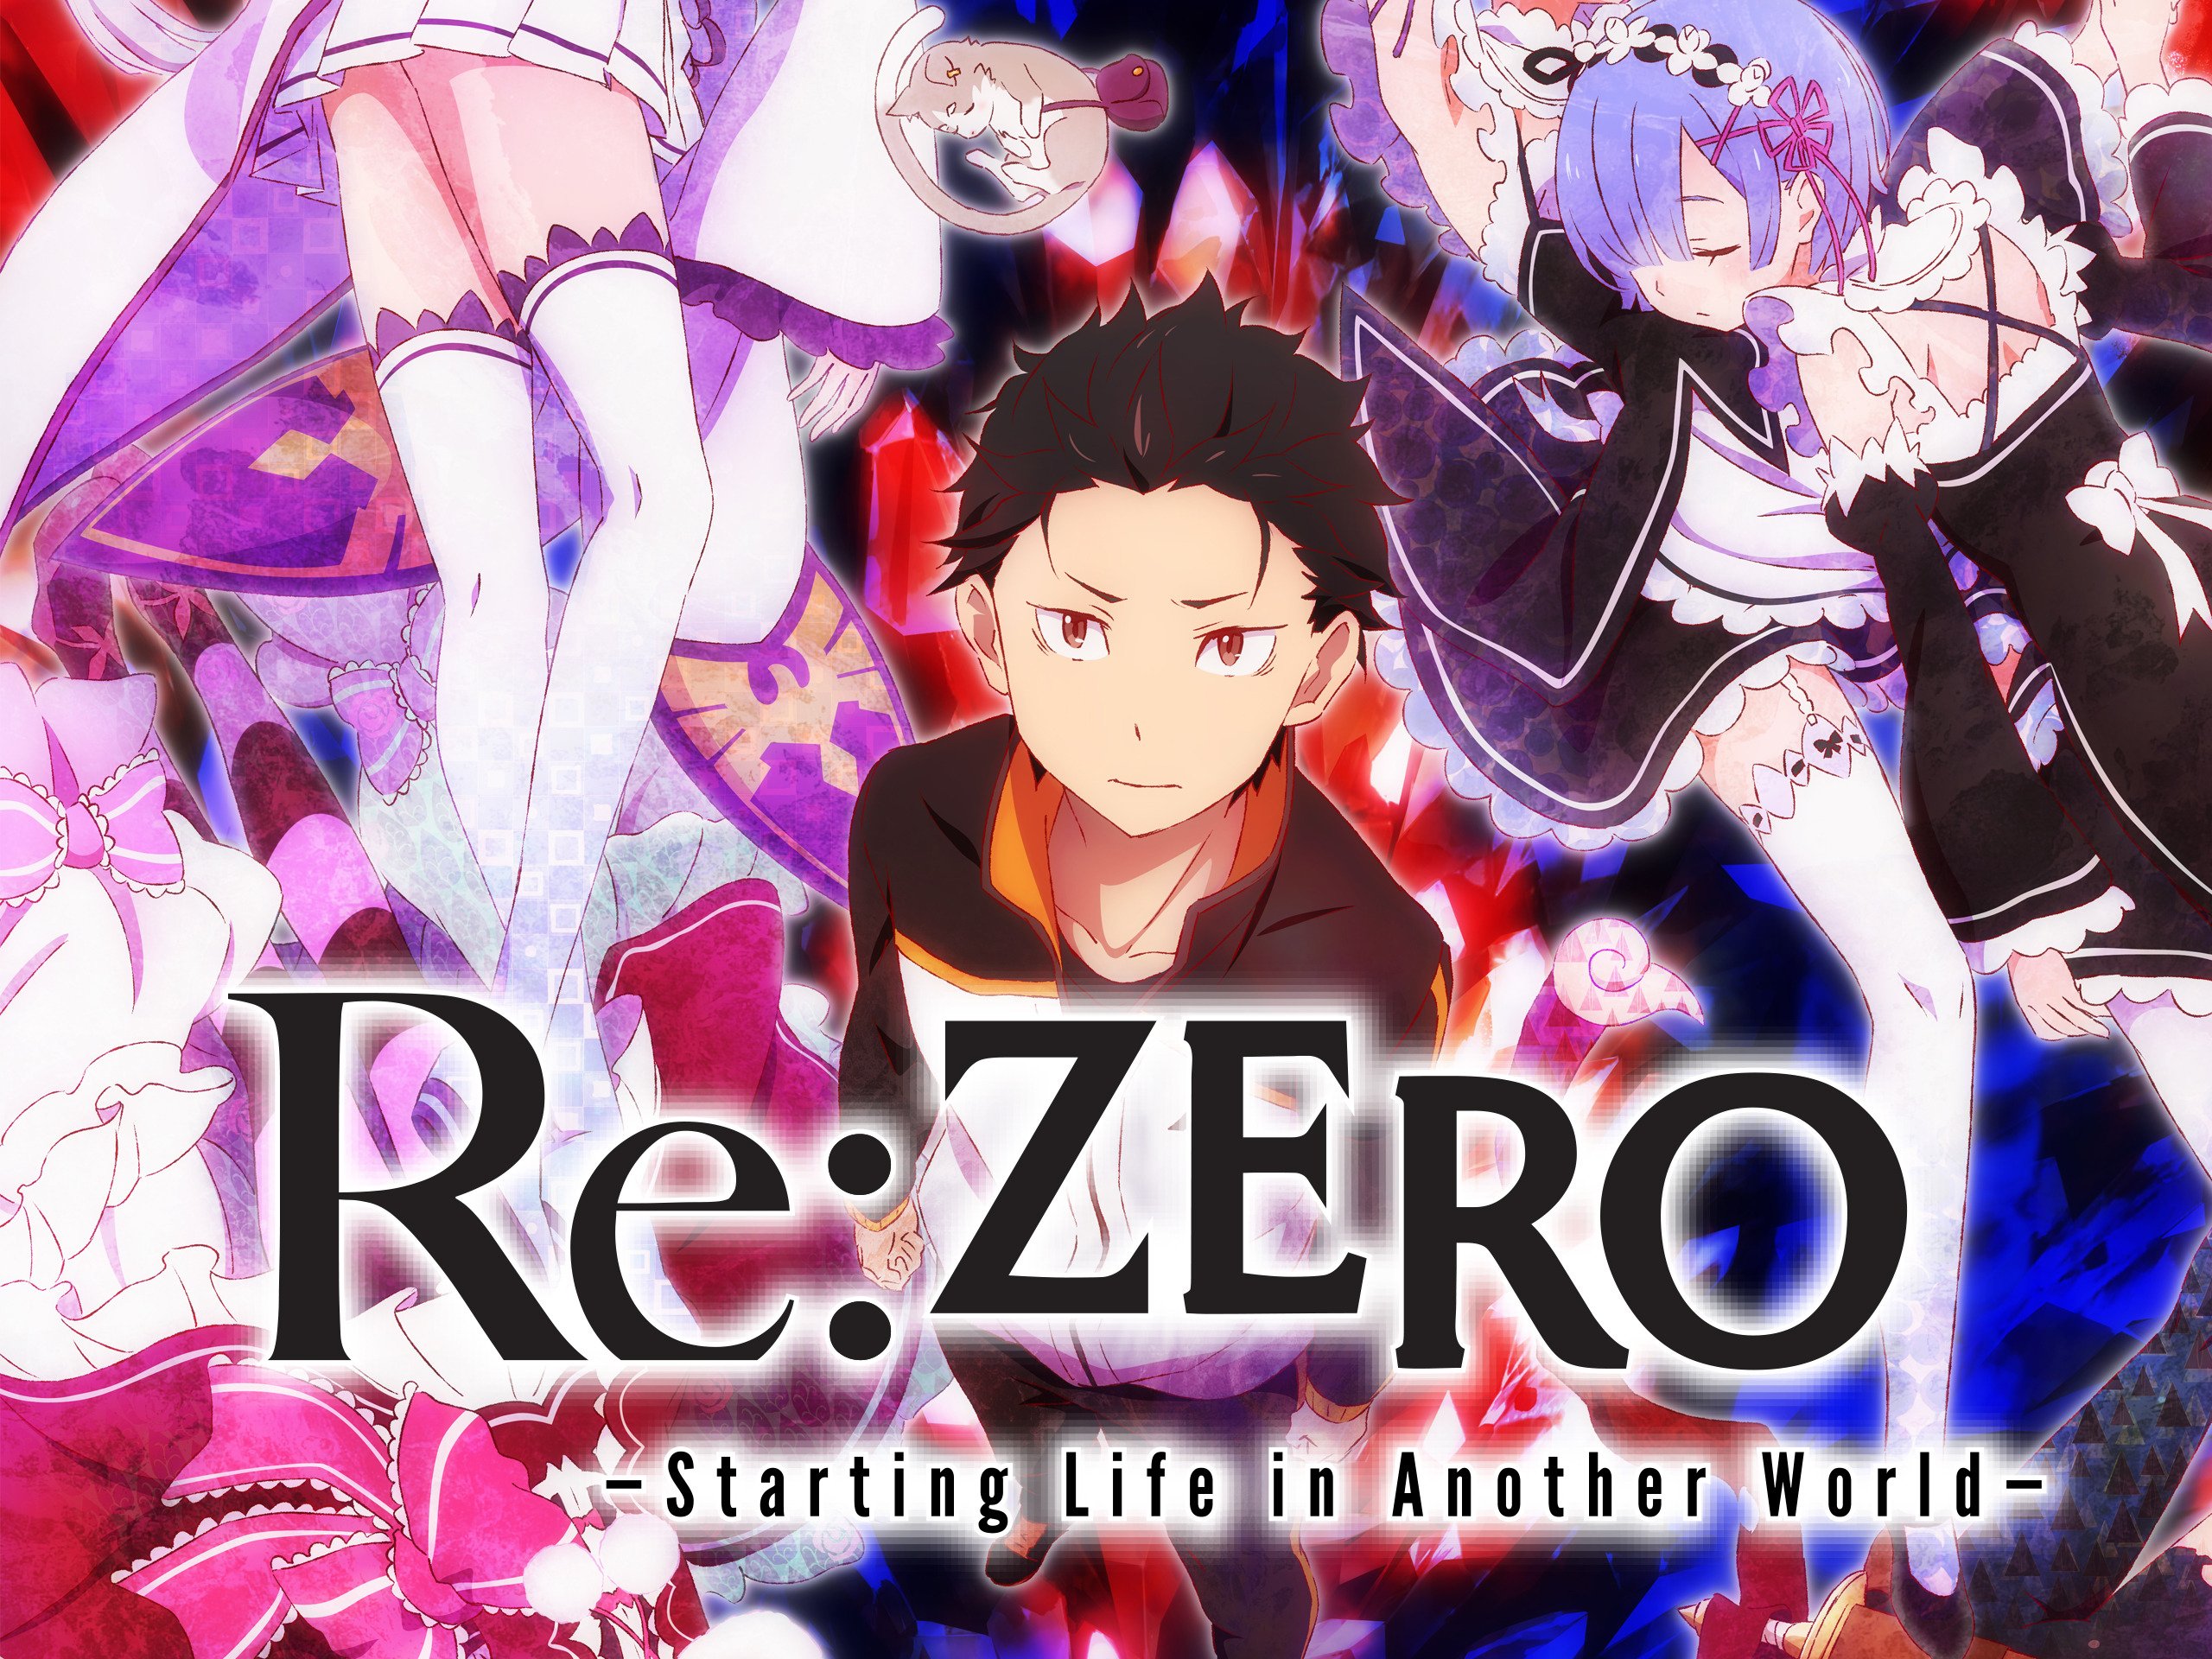 Re: Zero kara Hajimeru Isekai Seikatsu Next Episode Air